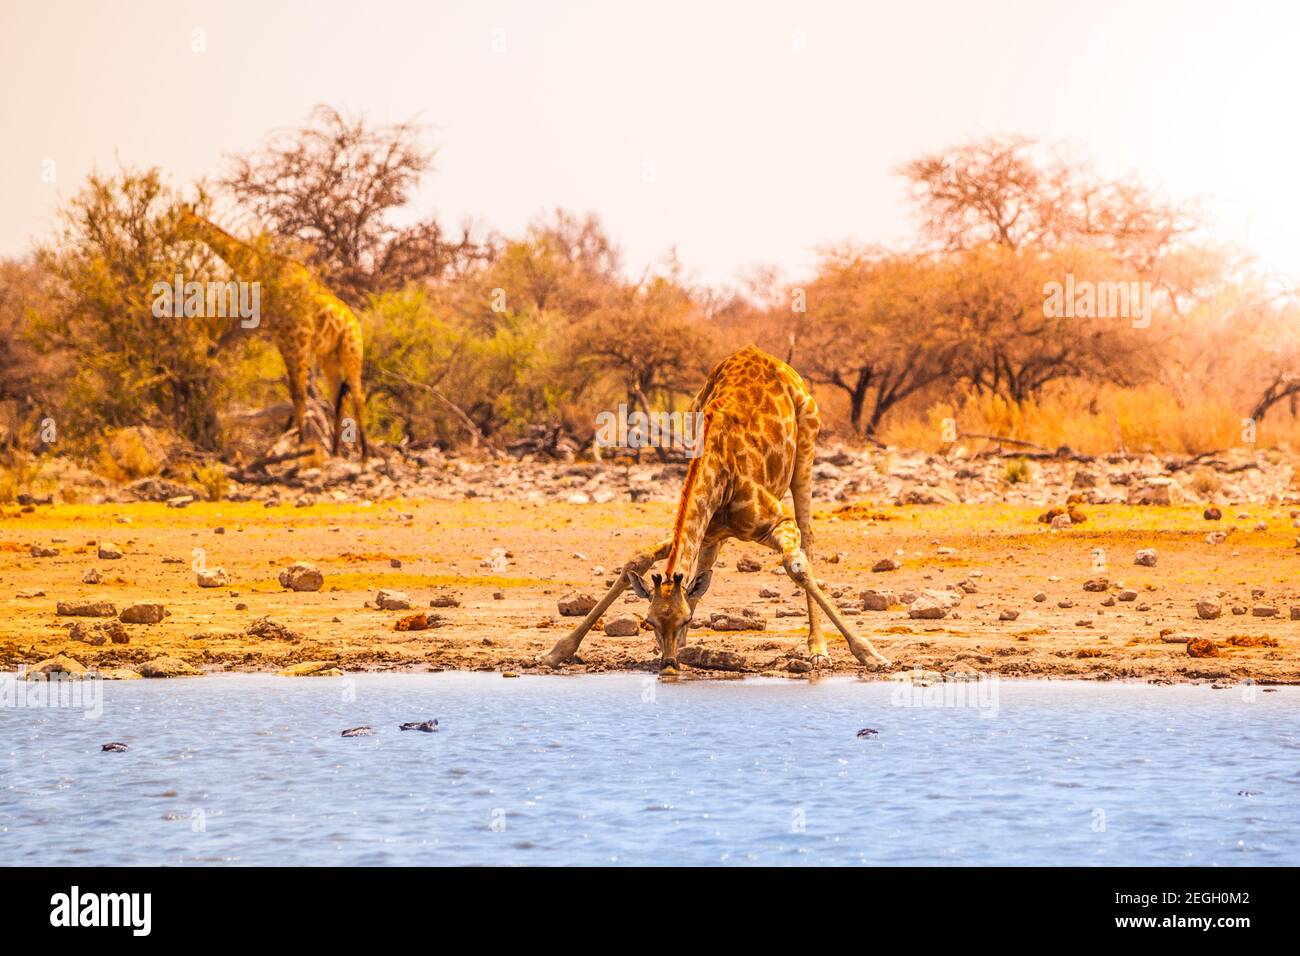 Giraffe drinking water Stock Photo